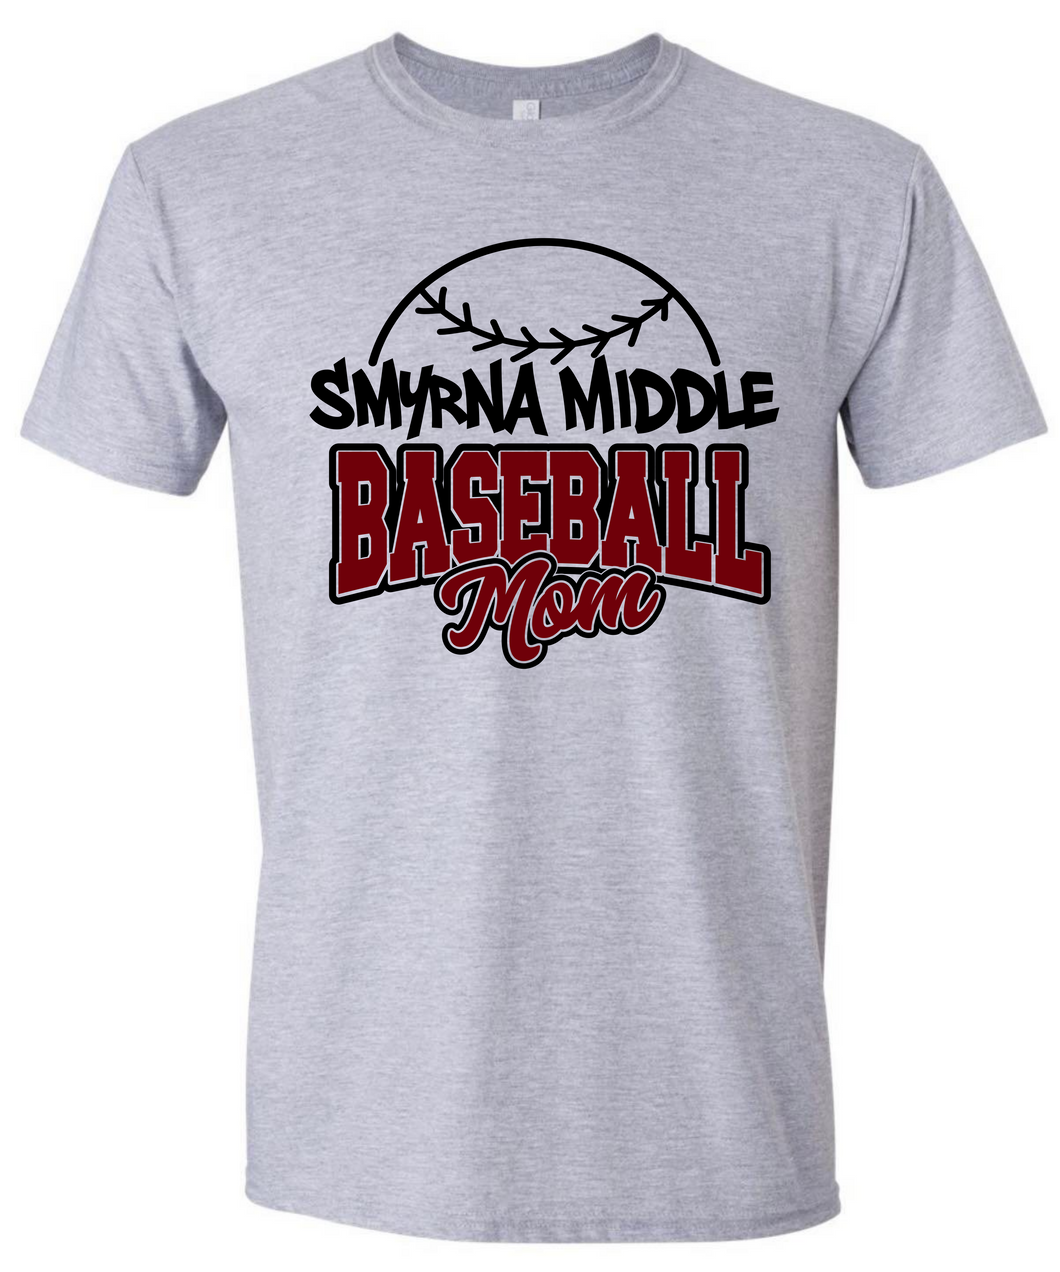 Smyrna Middle Baseball Mom Tshirt